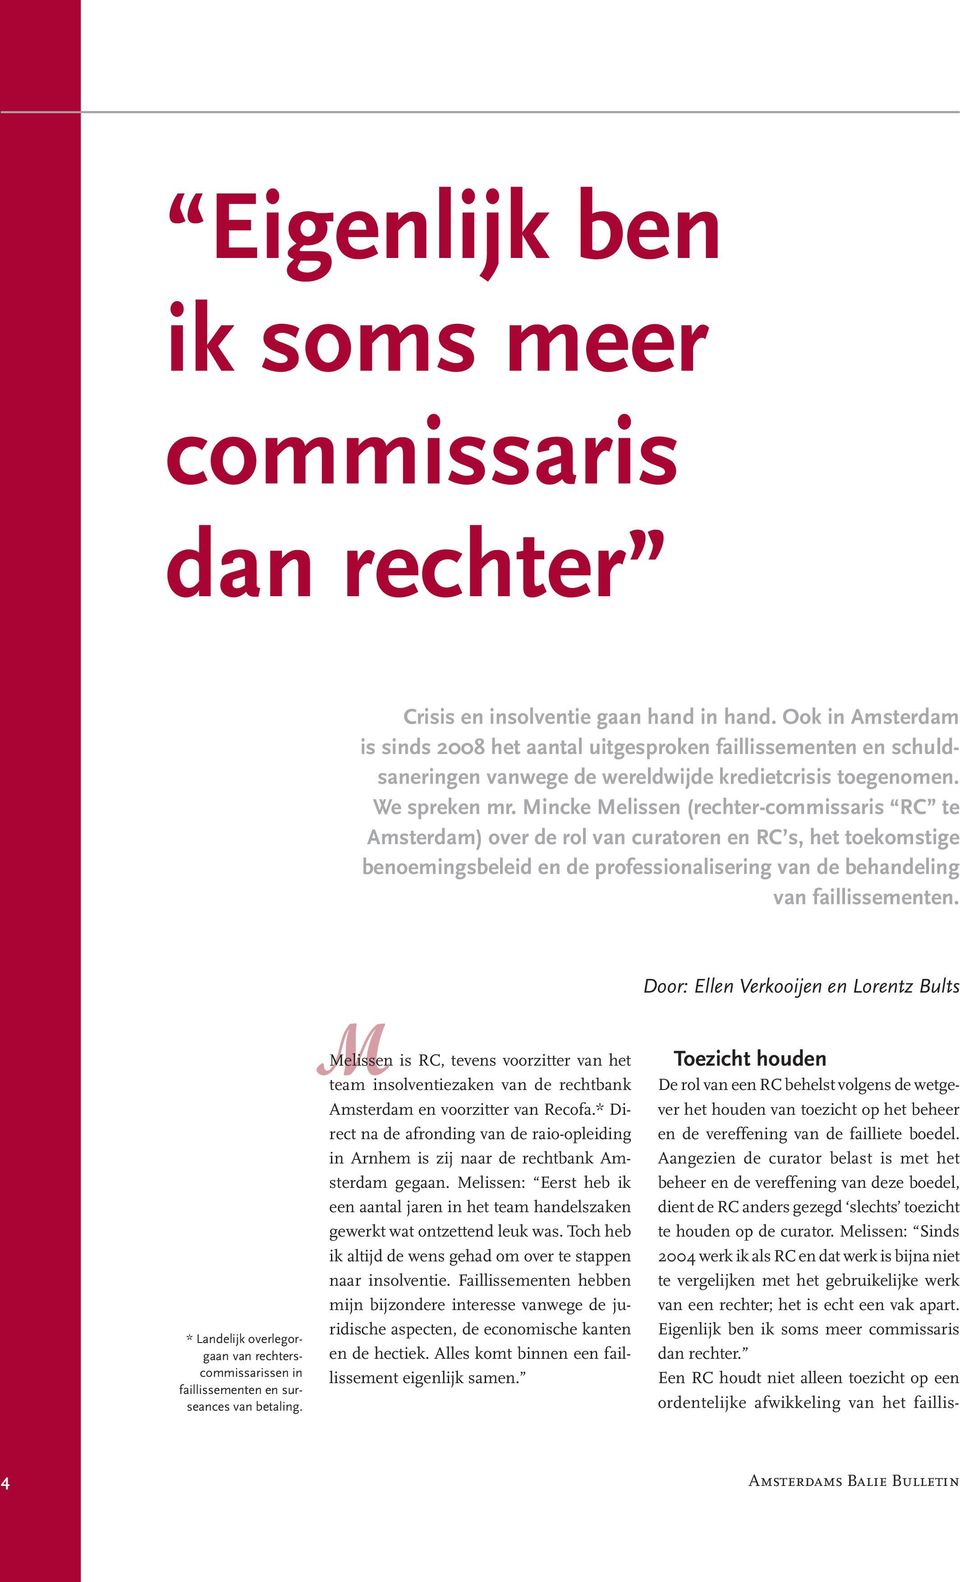 Mincke Melissen (rechter-commissaris RC te Amsterdam) over de rol van curatoren en RC s, het toekomstige benoemingsbeleid en de professionalisering van de behandeling van faillissementen.